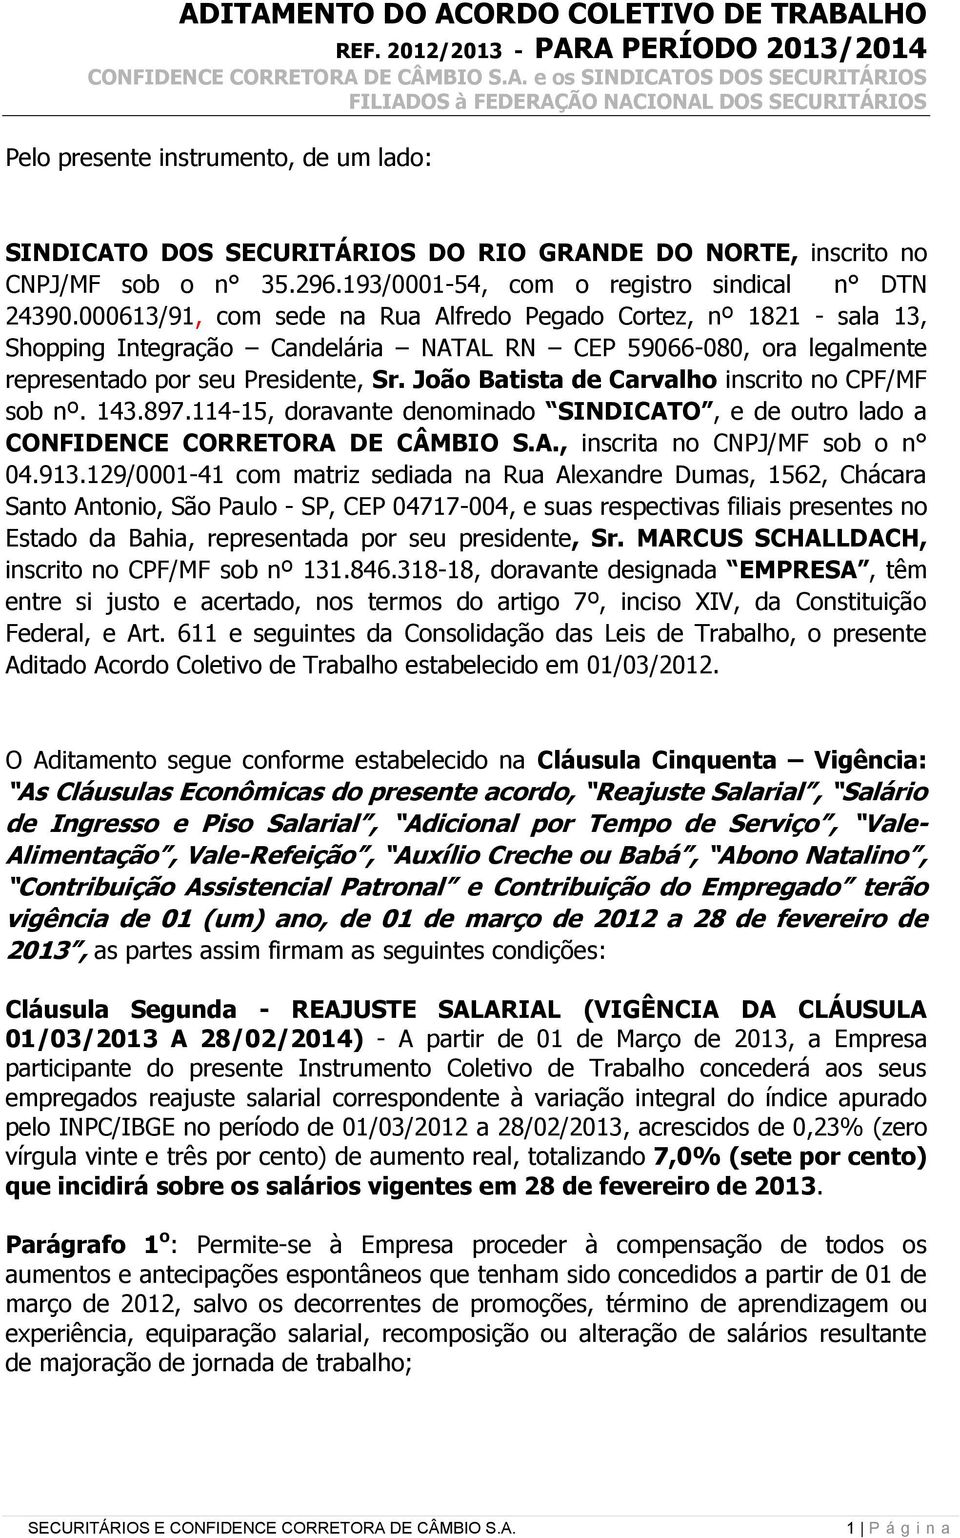 João Batista de Carvalho inscrito no CPF/MF sob nº. 143.897.114-15, doravante denominado SINDICATO, e de outro lado a CONFIDENCE CORRETORA DE CÂMBIO S.A., inscrita no CNPJ/MF sob o n 04.913.